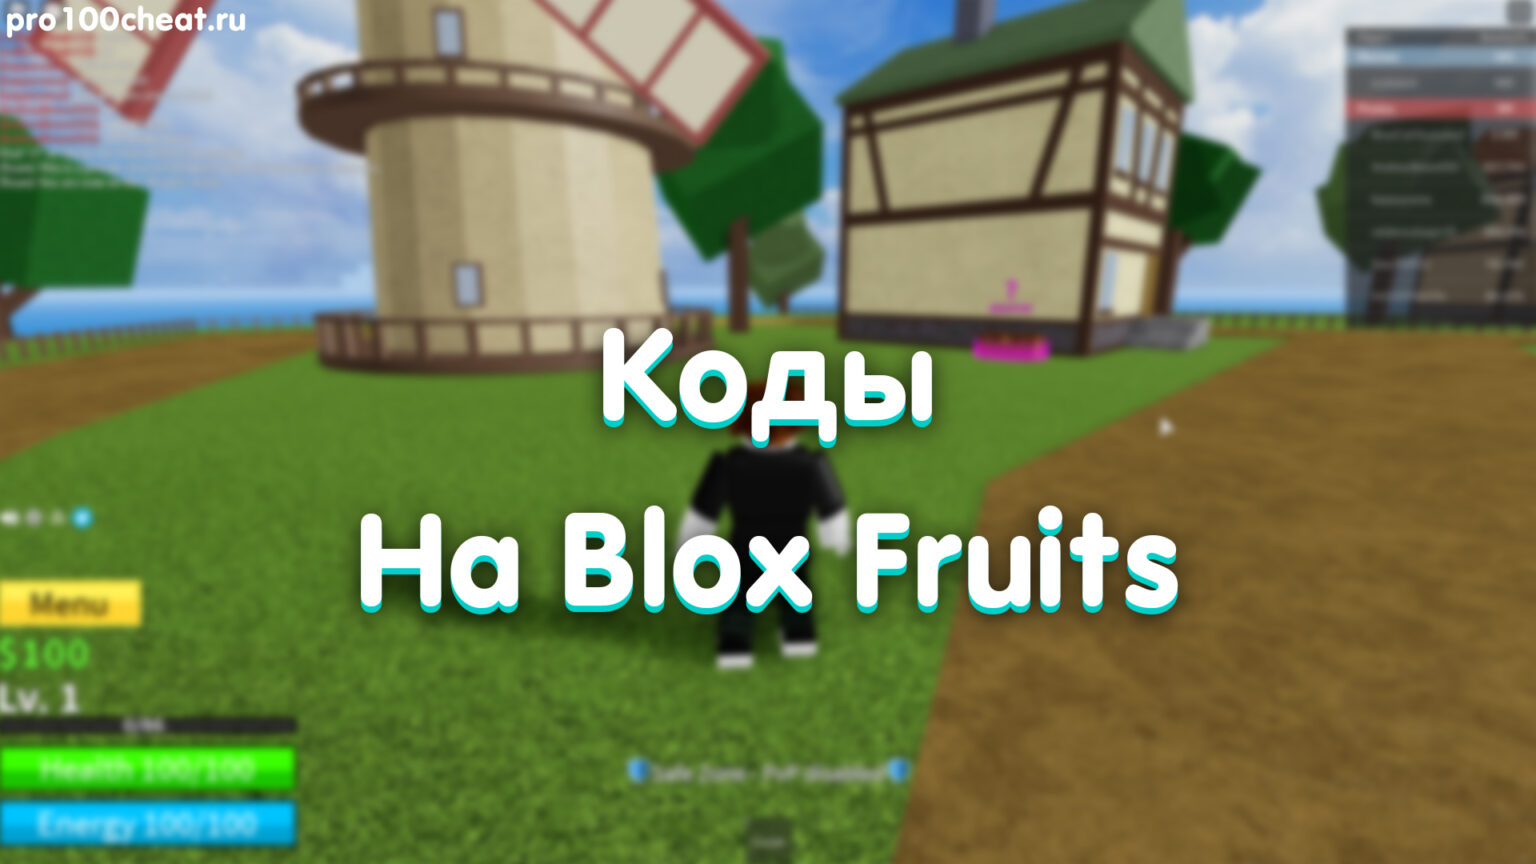 Blox fruits как получить волю. Коды BLOX Fruits. BLOX фрукты коды. Коды Блокс Фрут. Карта BLOX Fruits.